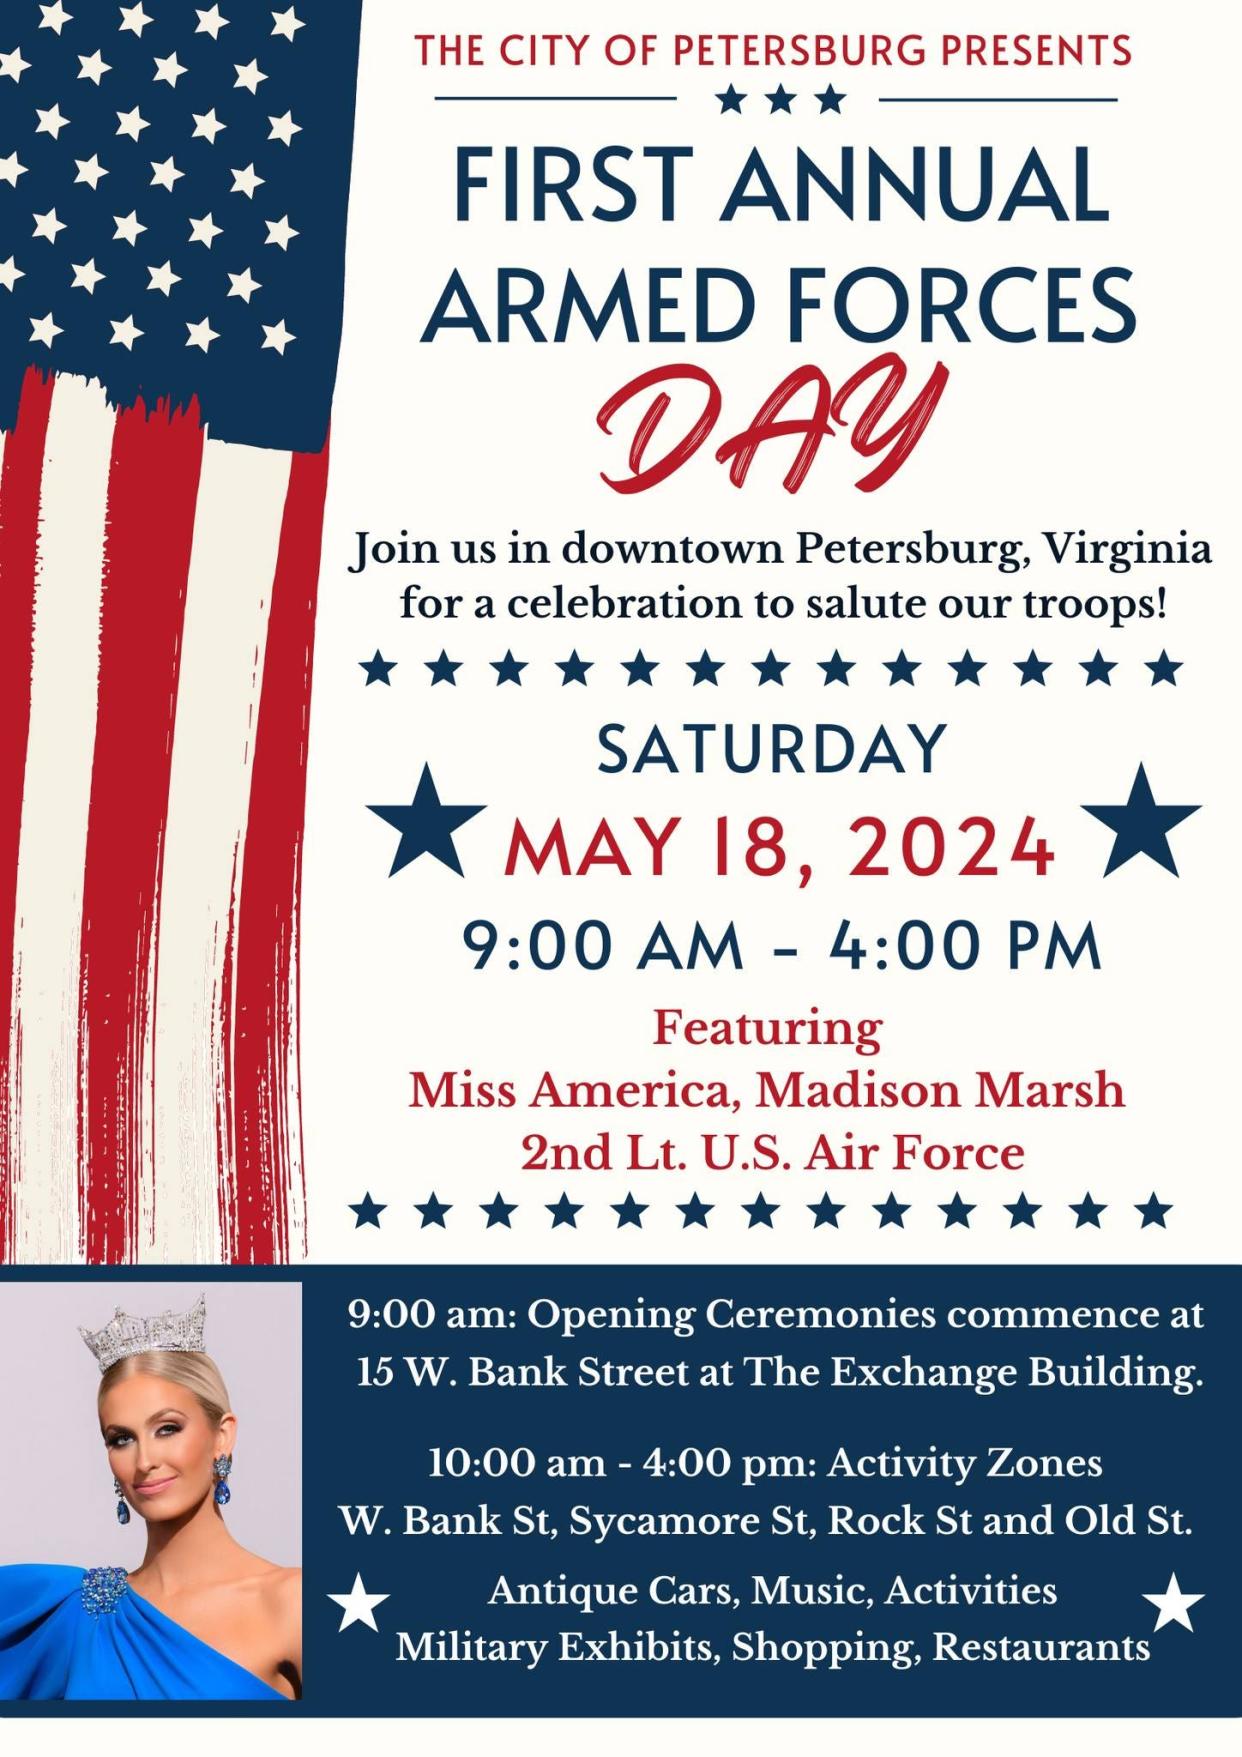 Armed Forces Day in Petersburg, Virginia